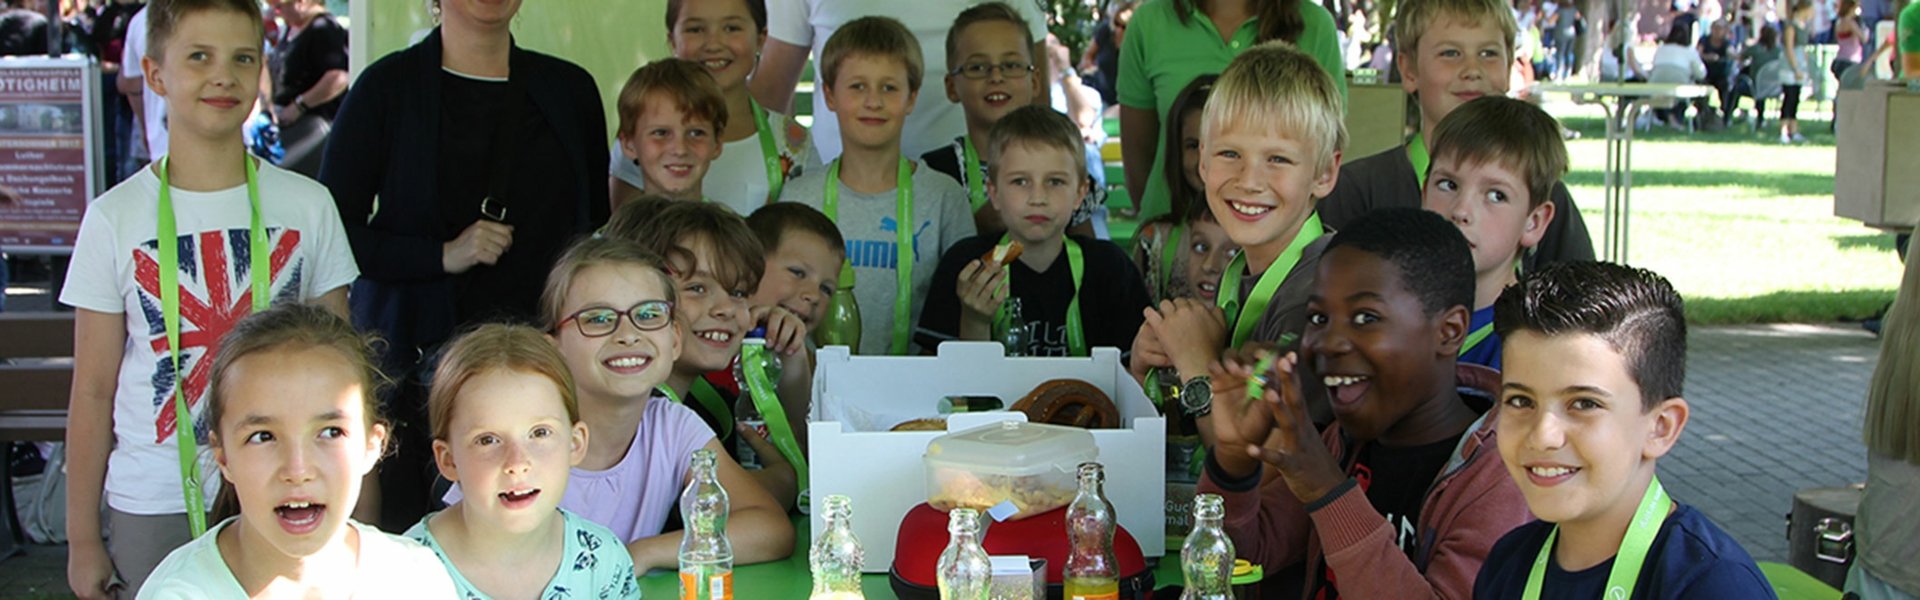 Grundschulen Malwettbewerb „Dschungelbuch trifft Hübi“: Gruppenbild aller Gewinner an einem grünen Tisch